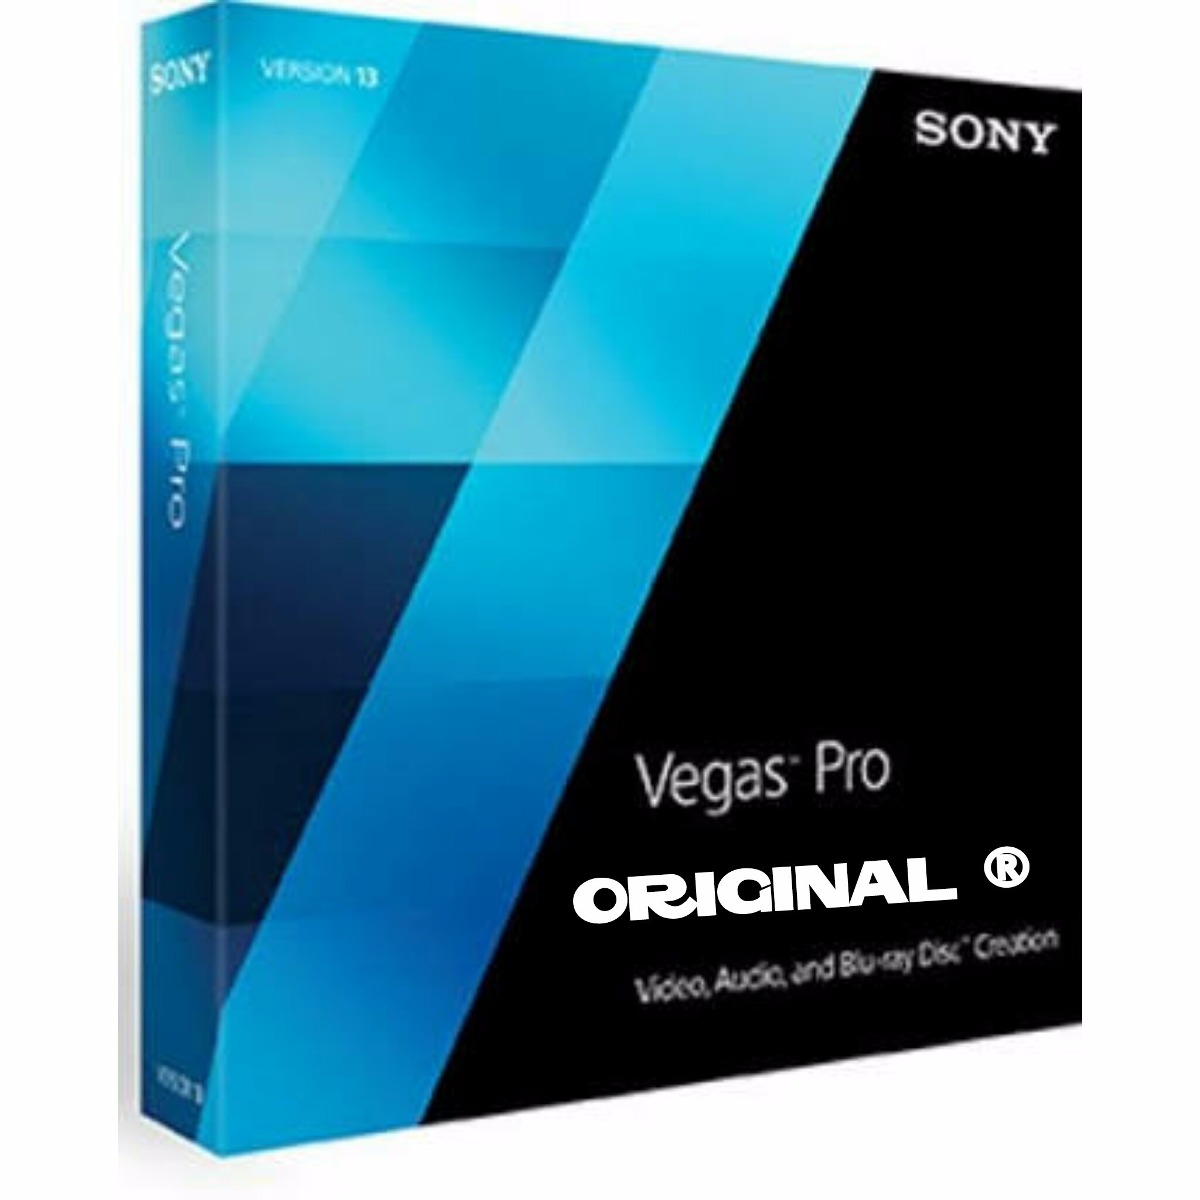 Sony Vegas Pro 13 Вставить Картинку – Telegraph